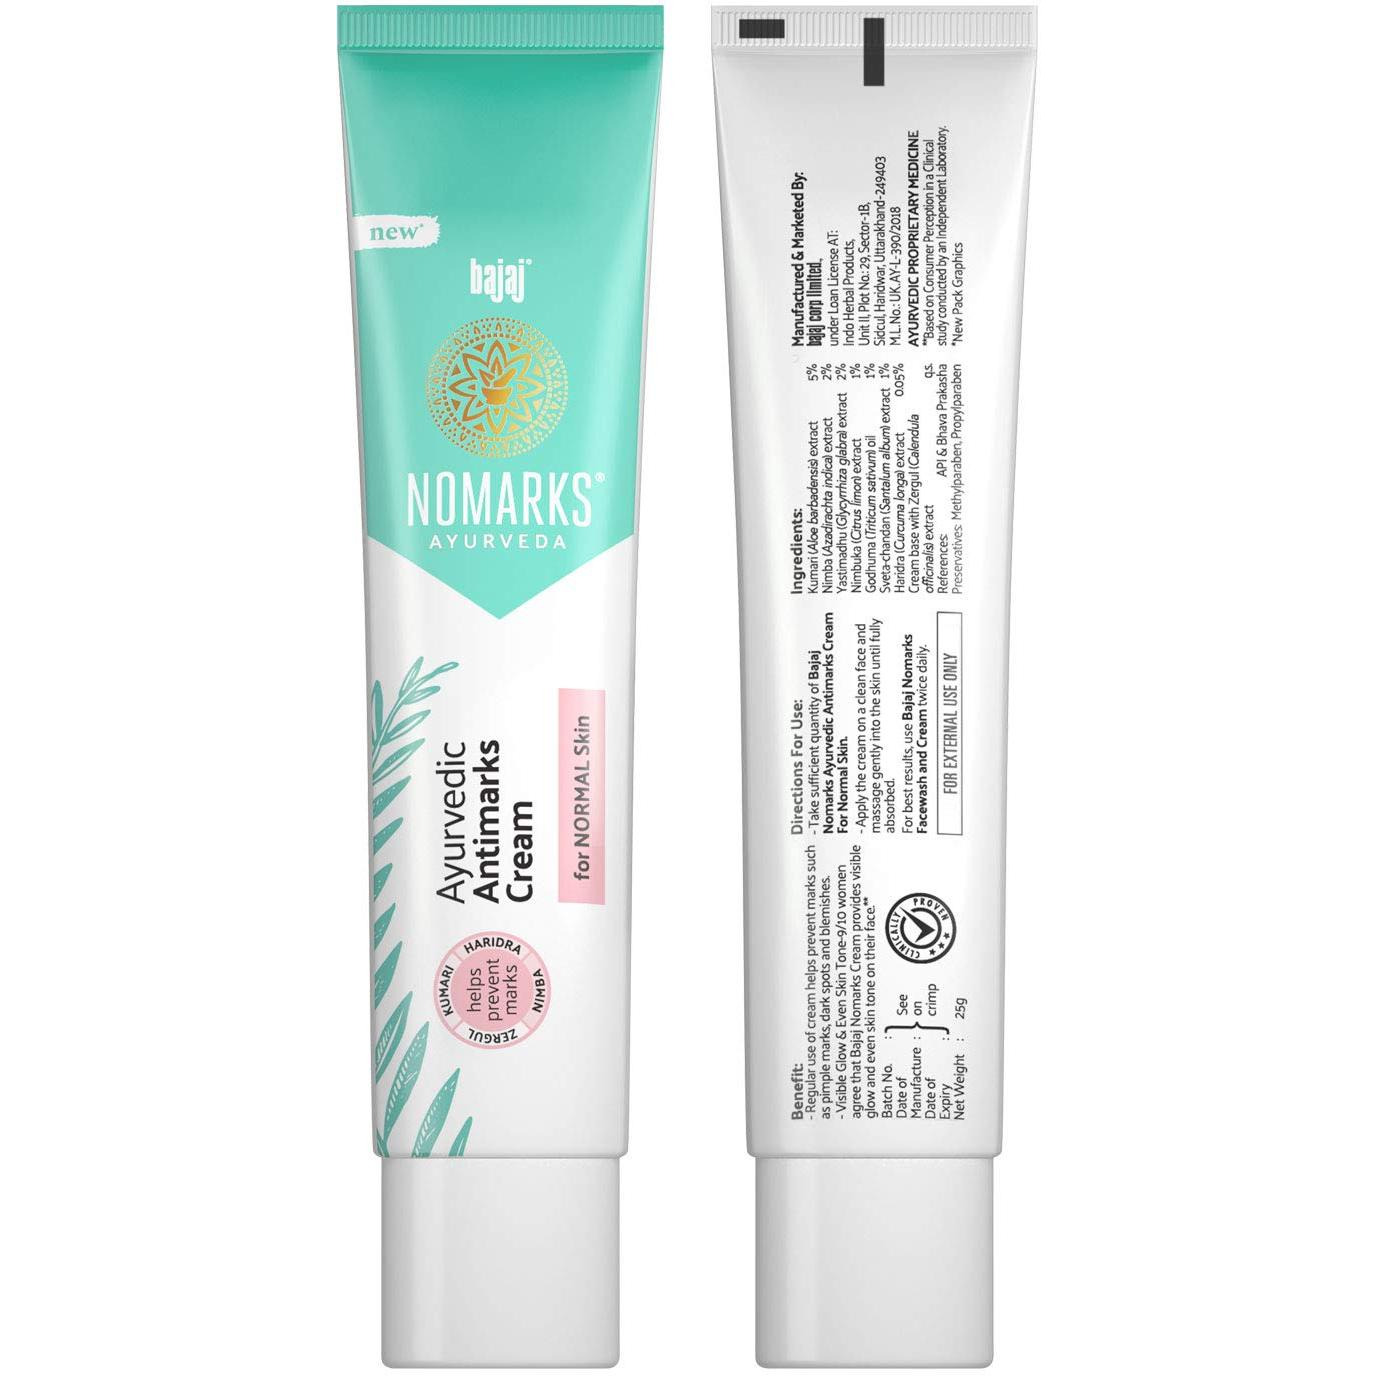 Bajaj Nomarks Ayurvedic Antimarks Cream For Normal Skin - 25 Gm (0.881 Oz)